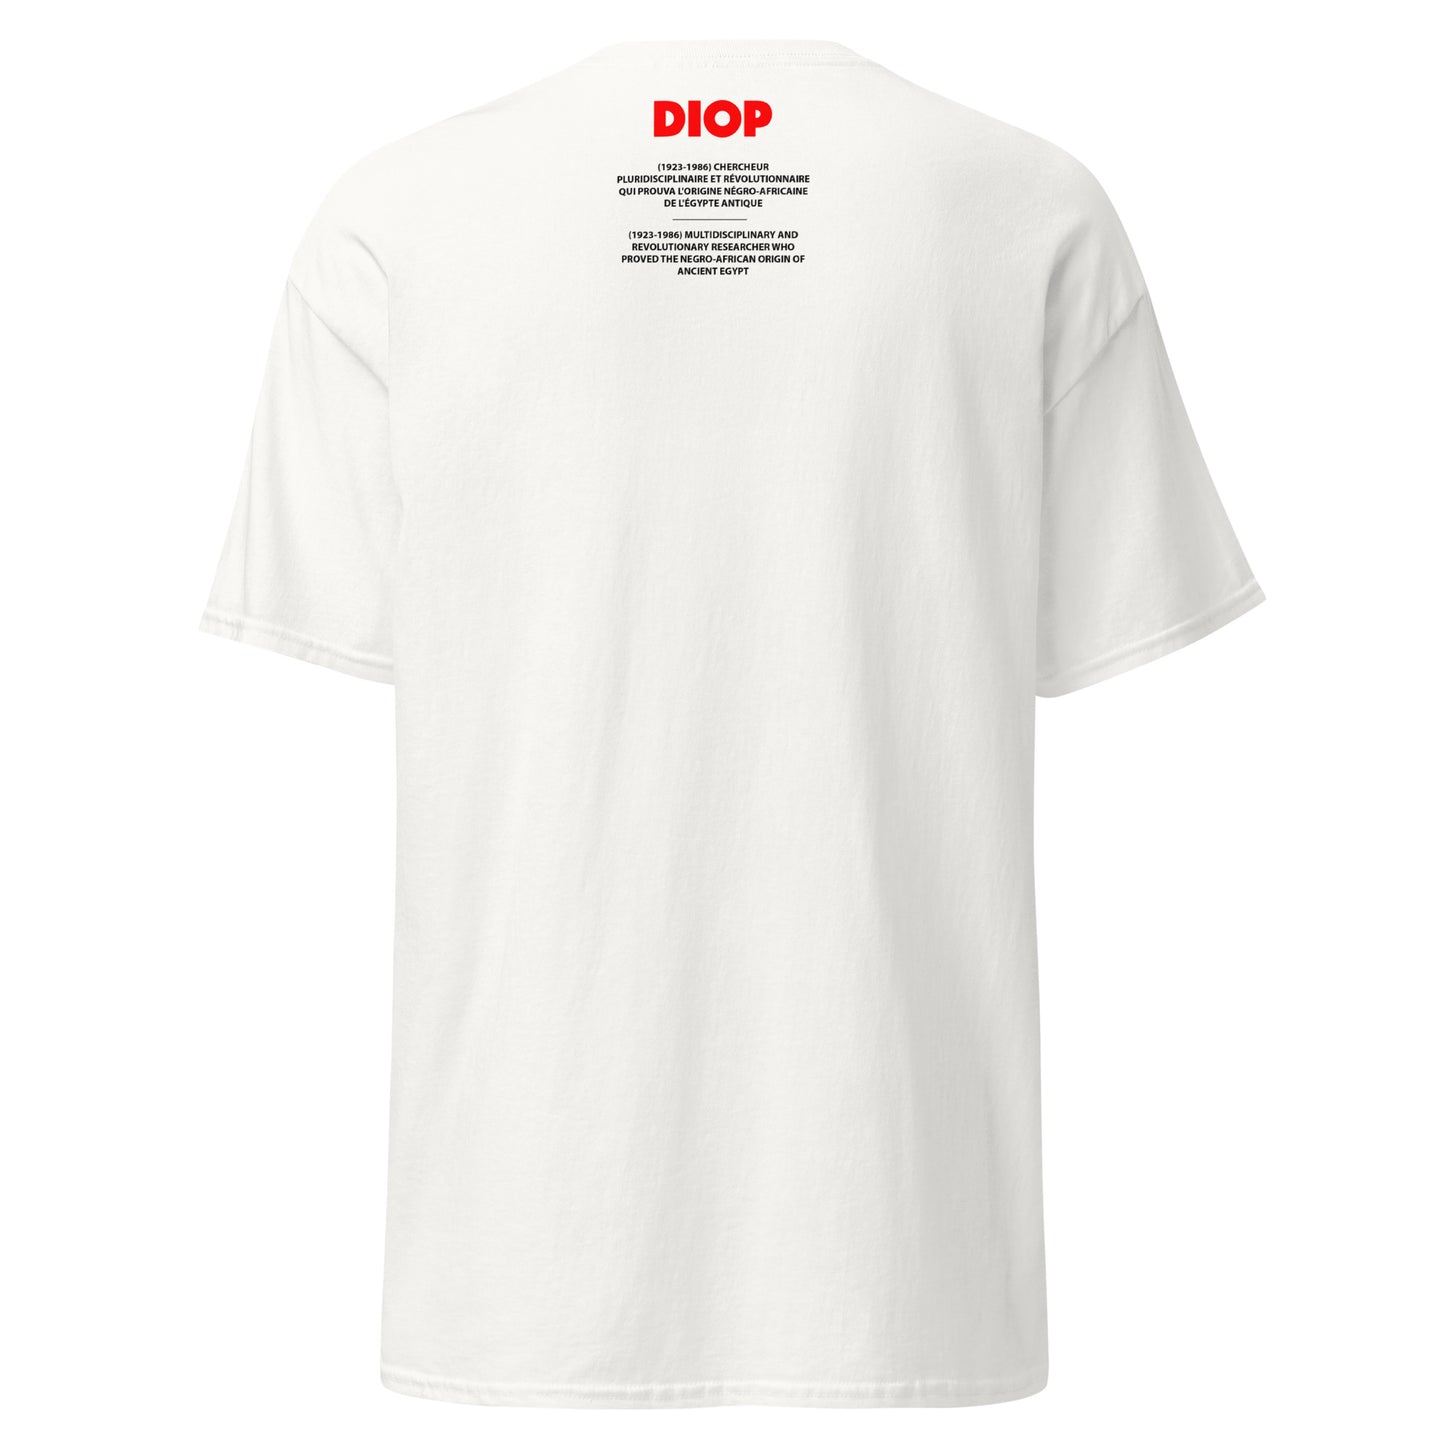 DIOP (T-shirt)